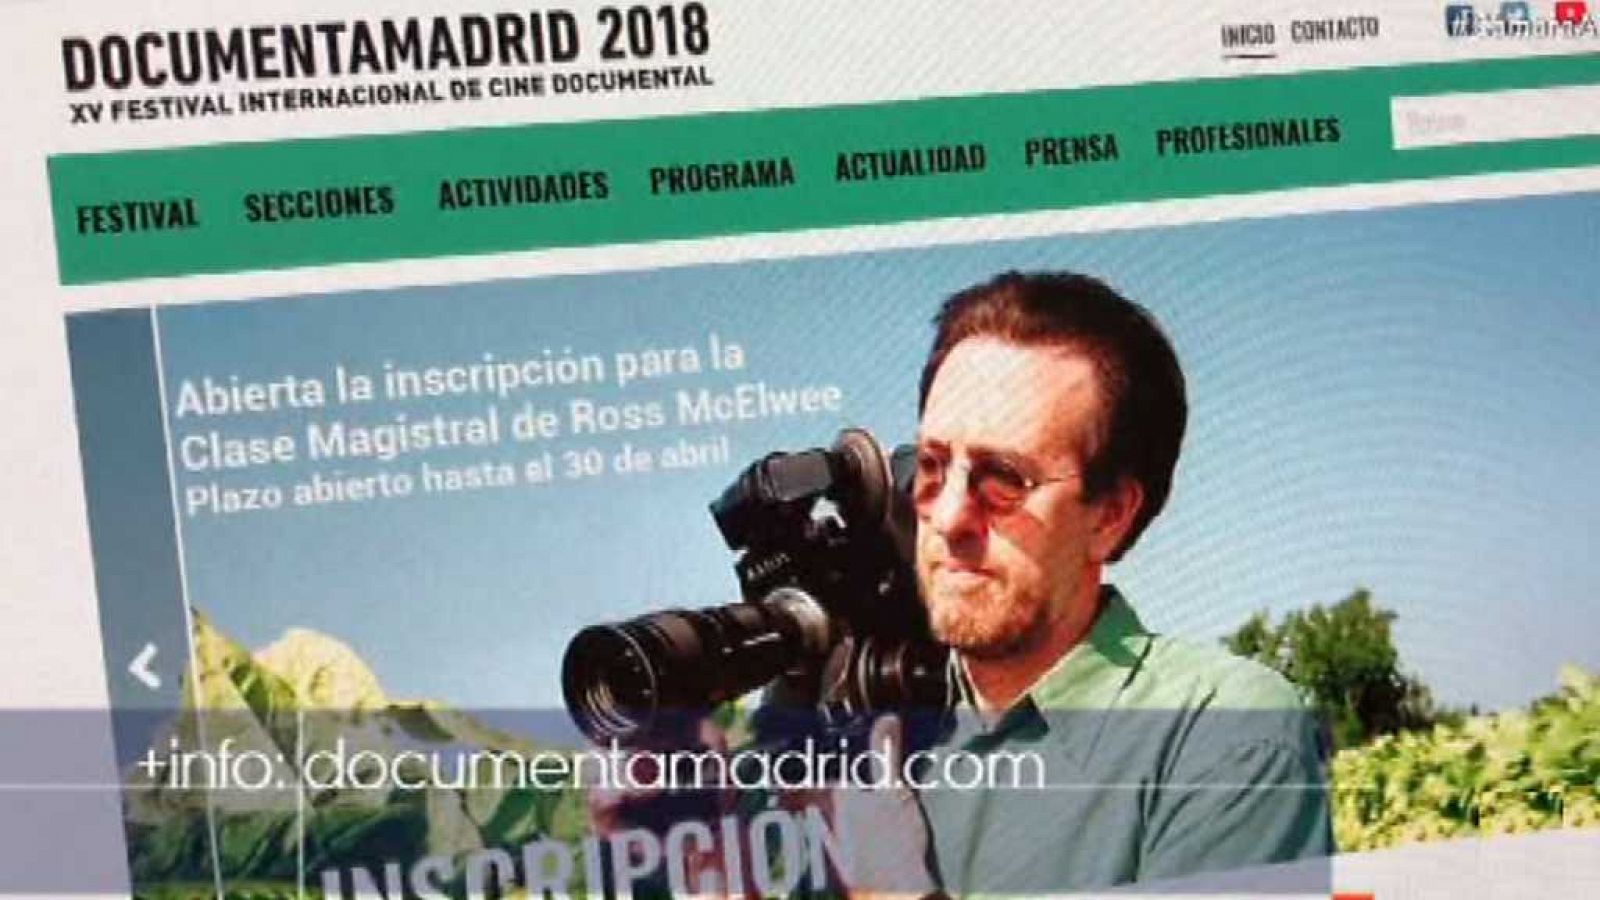 Cámara abierta - DocumentaMadrid 2018; el youtuber y físico Javier Santaolalla; y Laura Jordán Bambach en 1minutoCOM